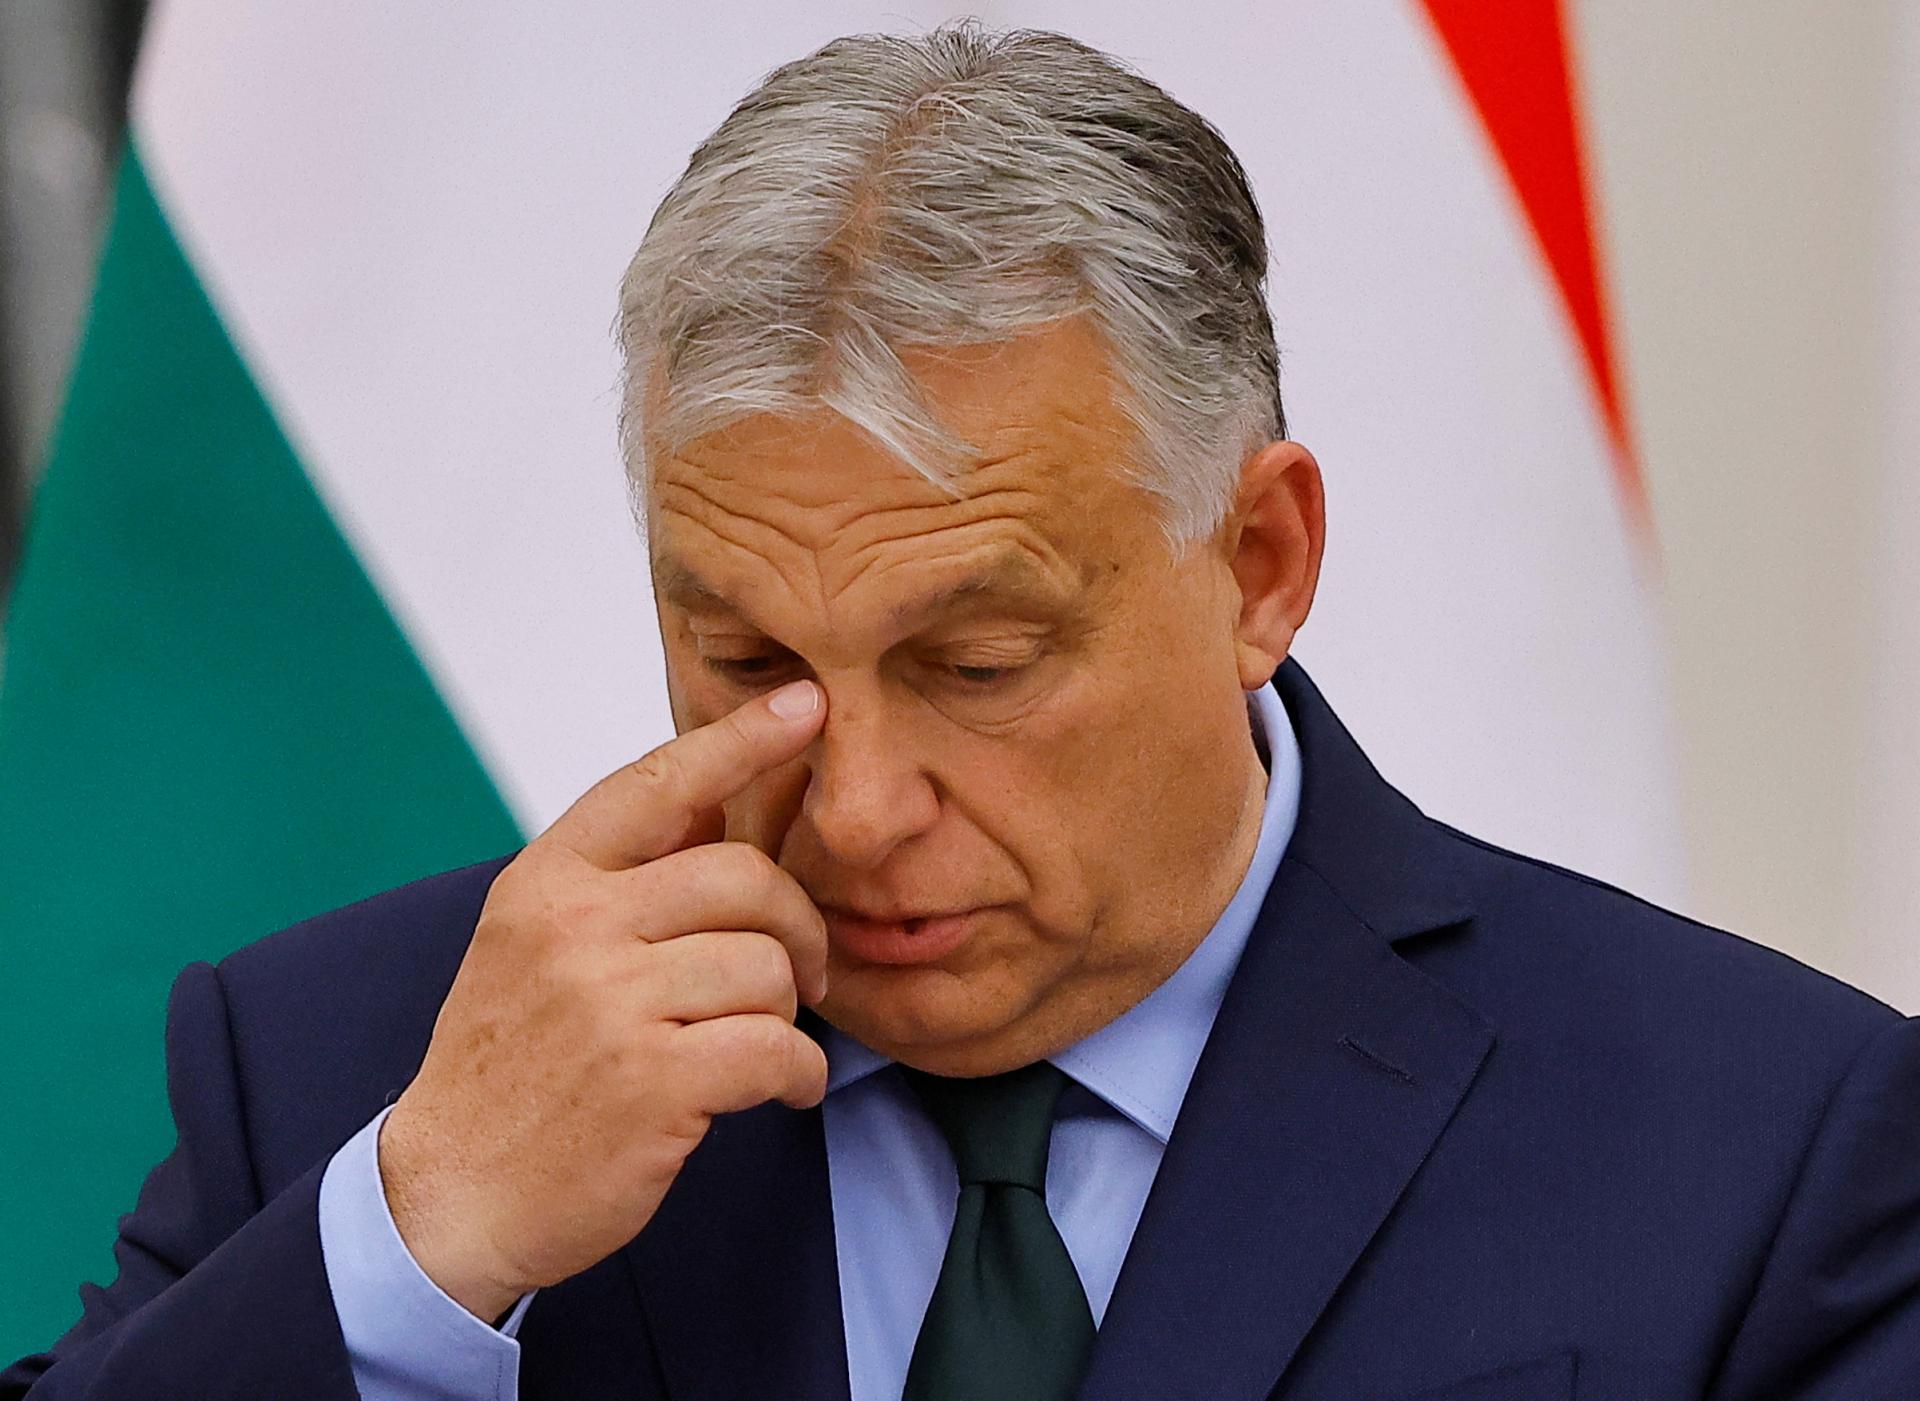 Orbán žiadal Erdogana o podporu svojej mierovej misie súvisiacej s Ukrajinou